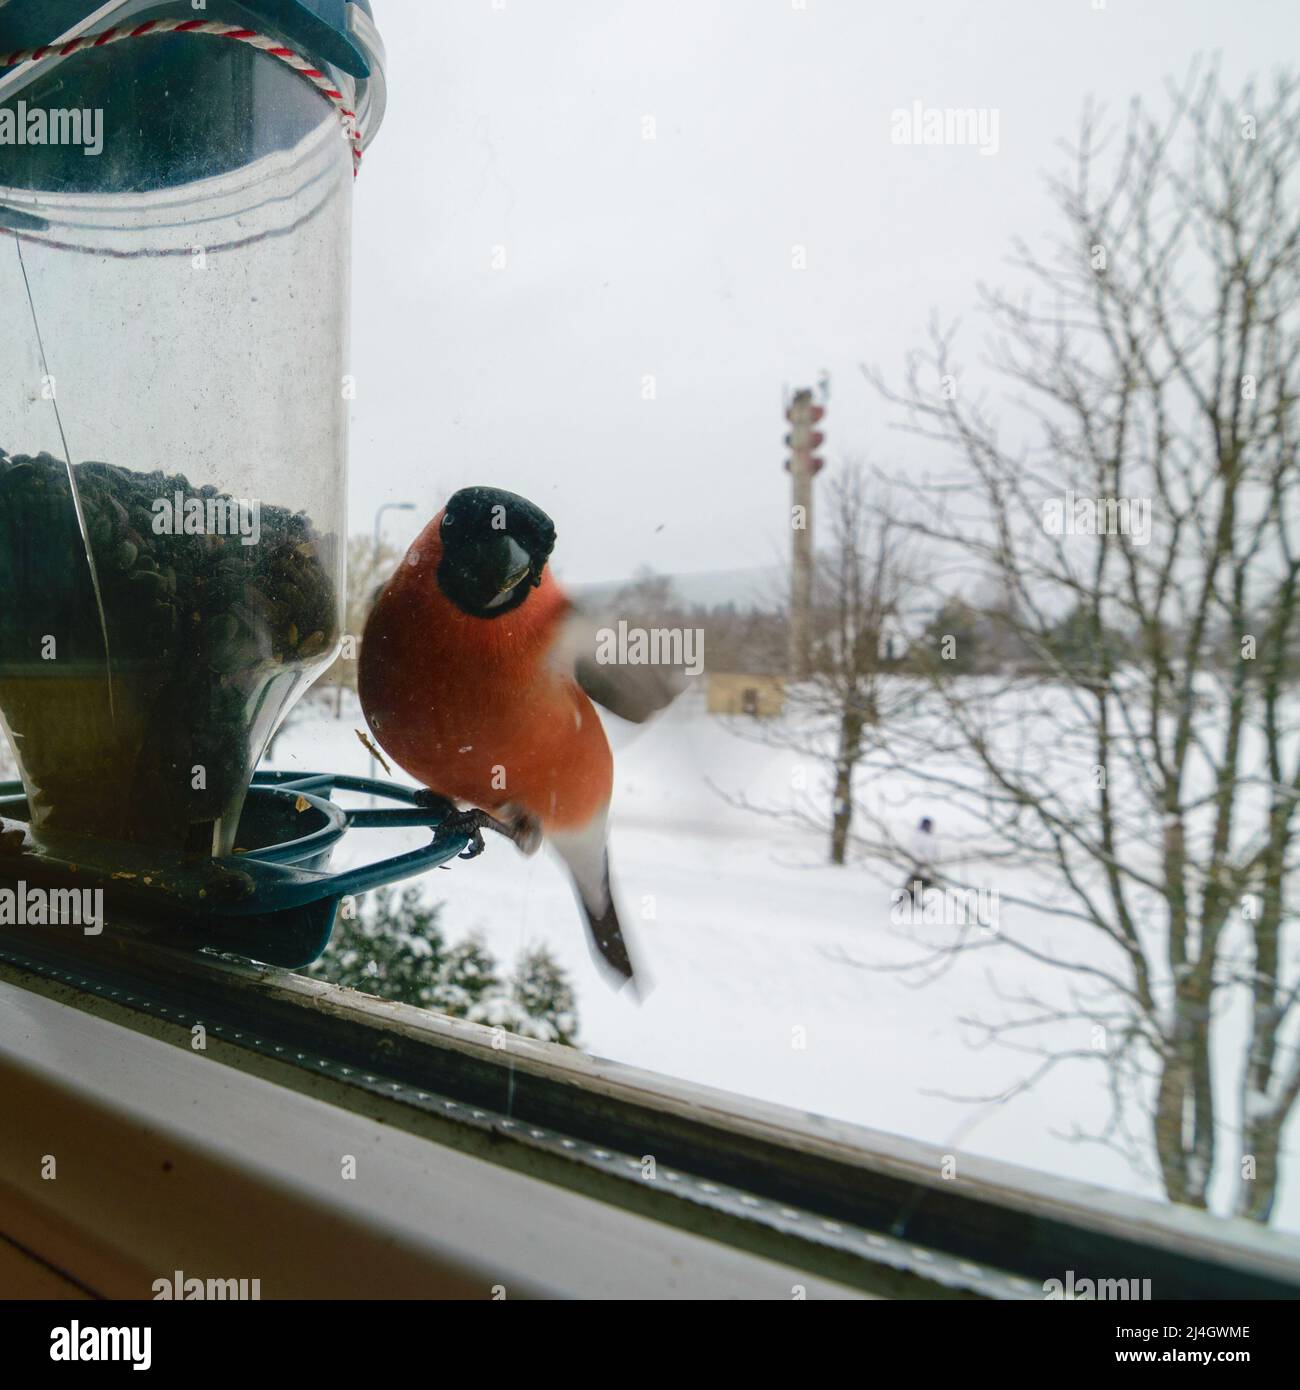 L'uccello mangia semi di girasole, si nutre dalla finestra, aiuta gli uccelli a trovare il cibo in inverno, fotografato attraverso il vetro della finestra, immagine sfocata Foto Stock